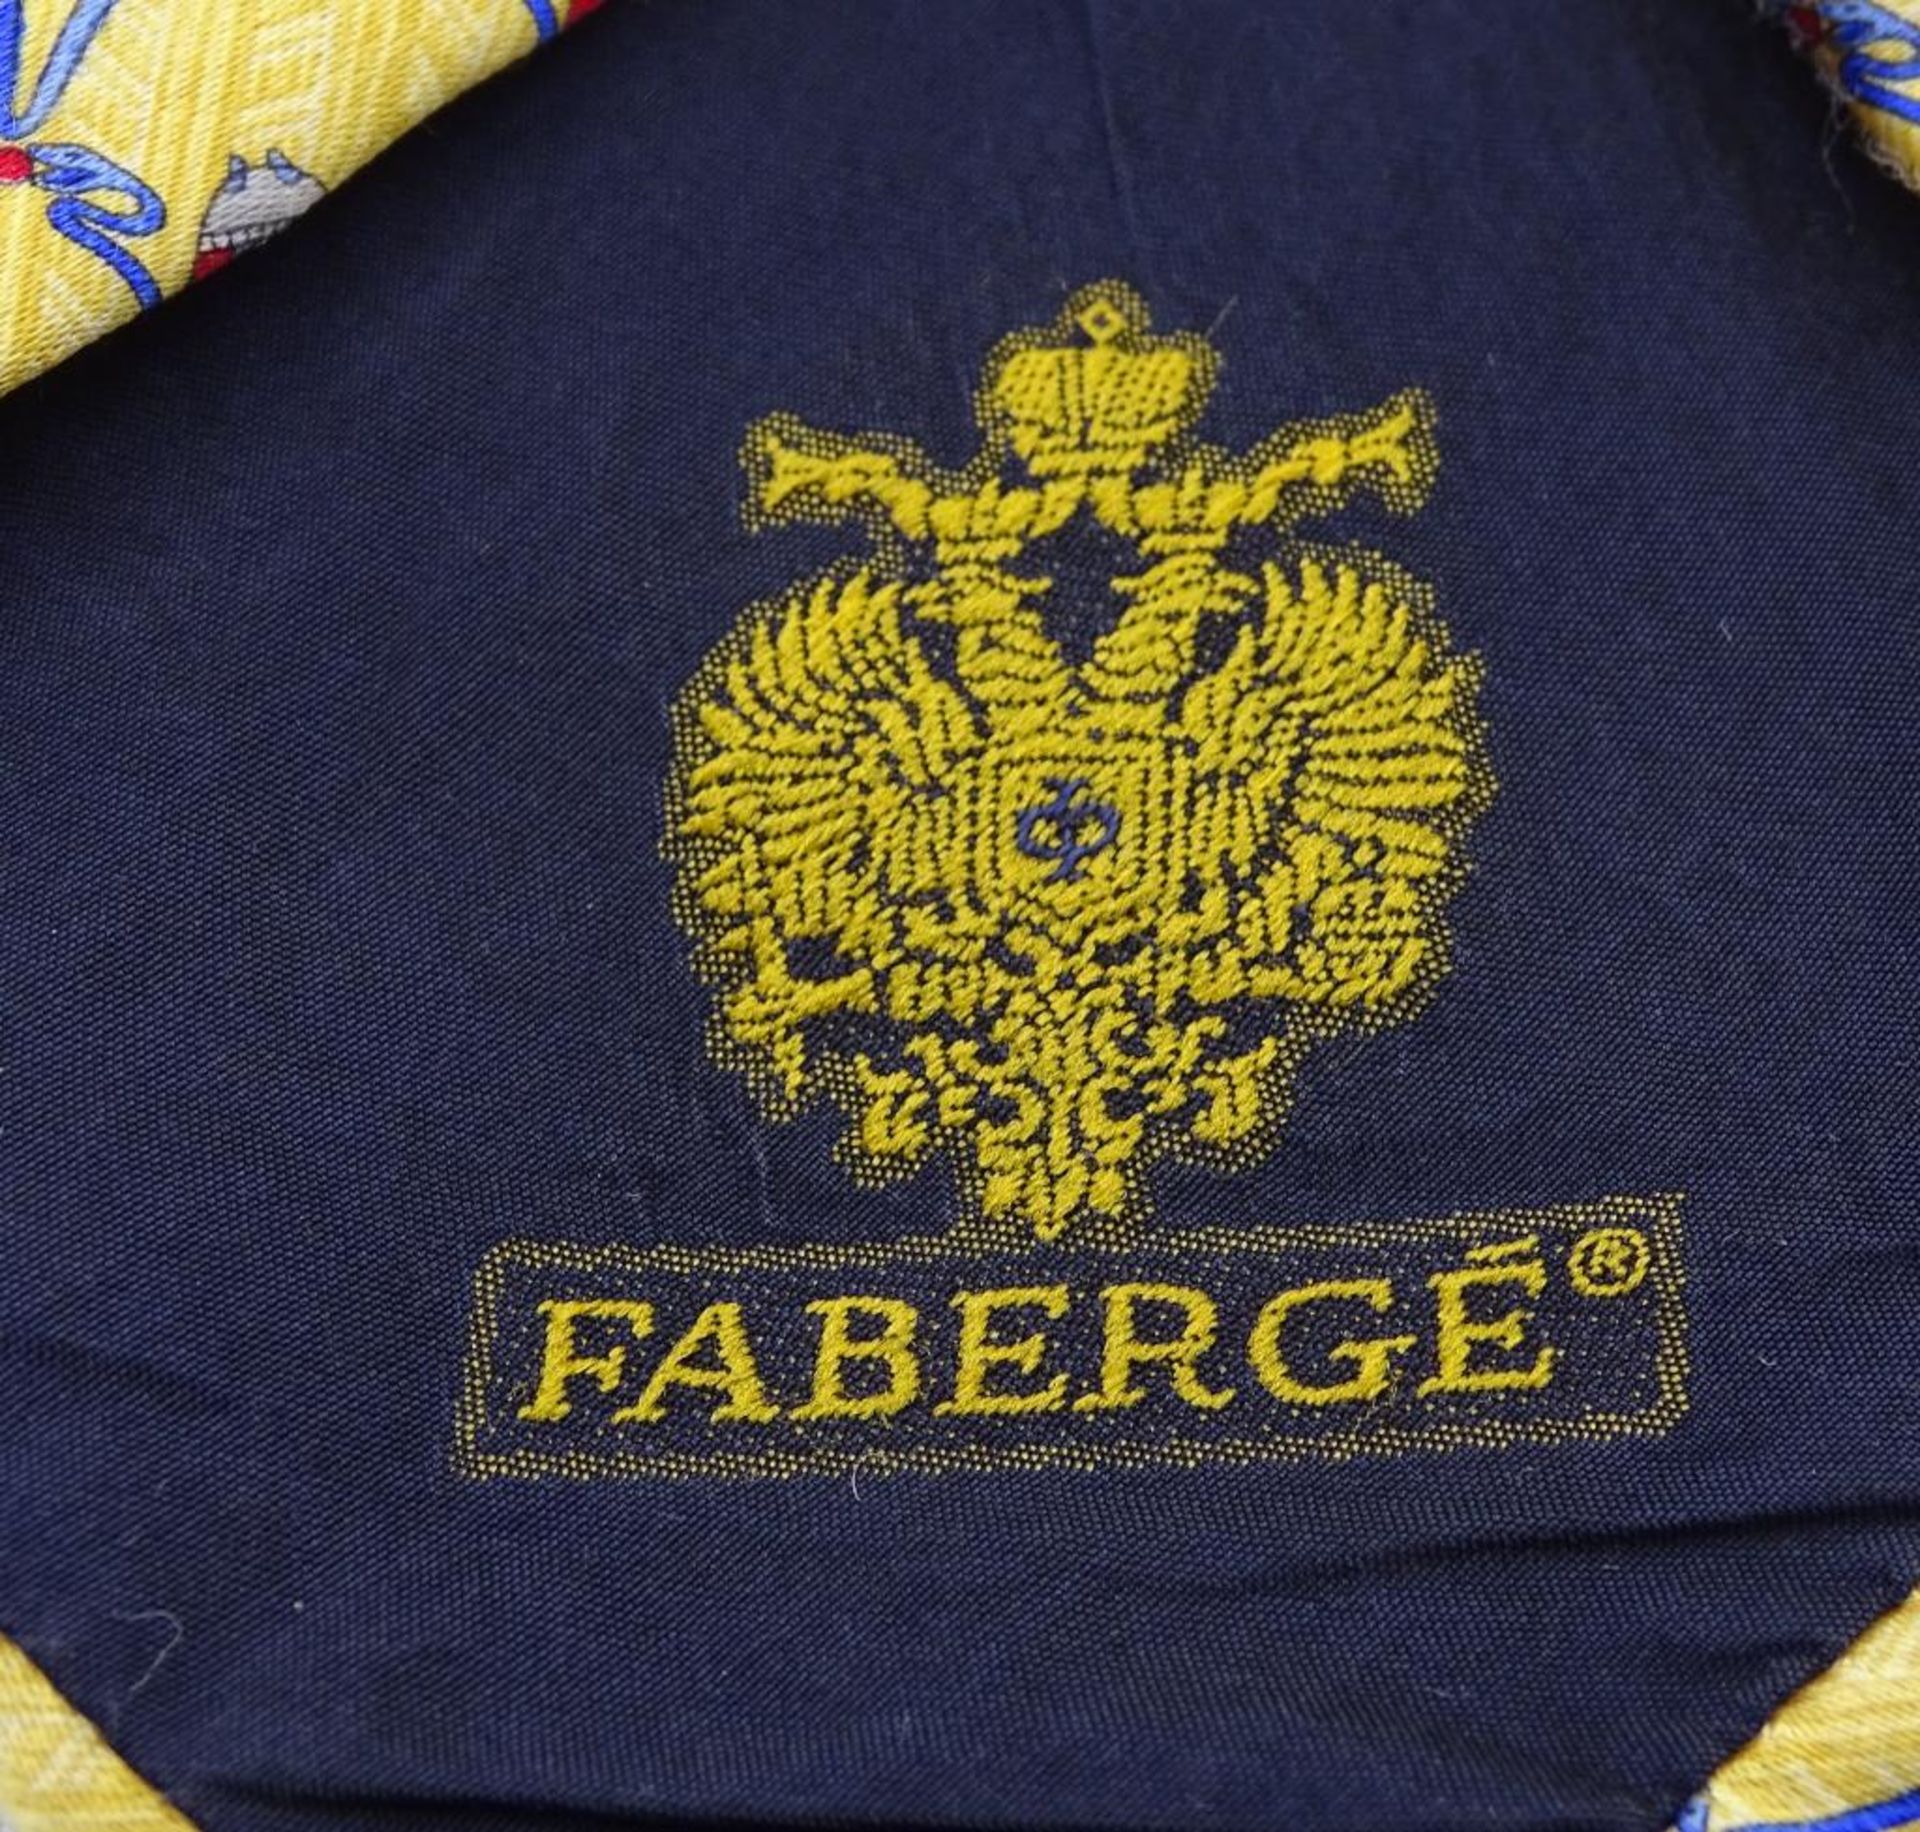 Krawatte "Faberge",Tragespuren,Maikäfer Muster,gelbfarbig,L- 144c - Bild 4 aus 5